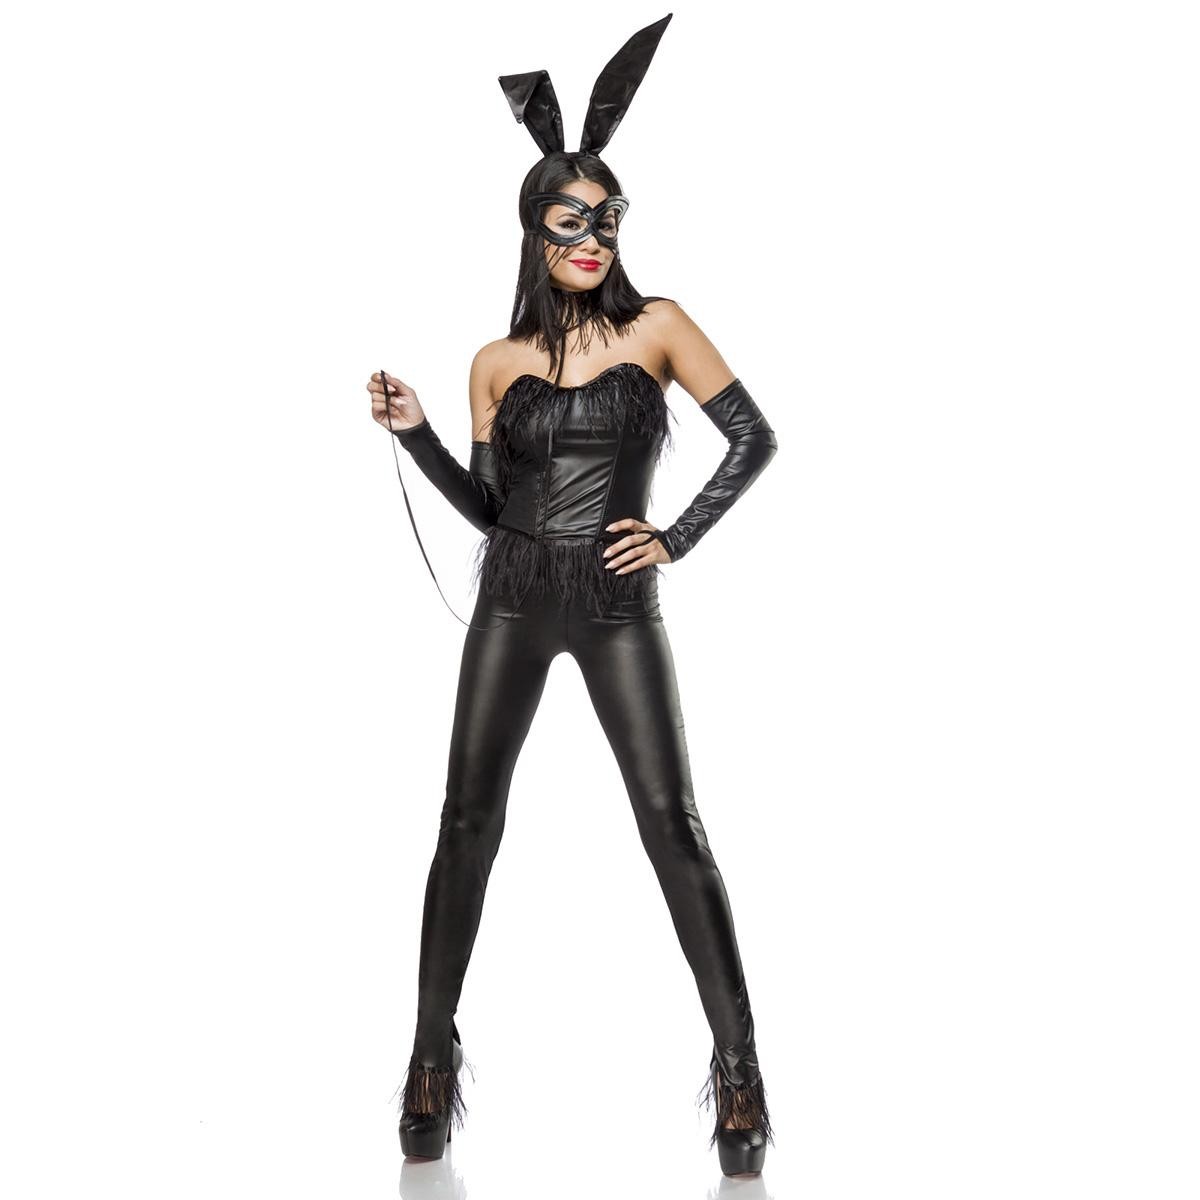  Bunny-Kostüm  -  schwarz 